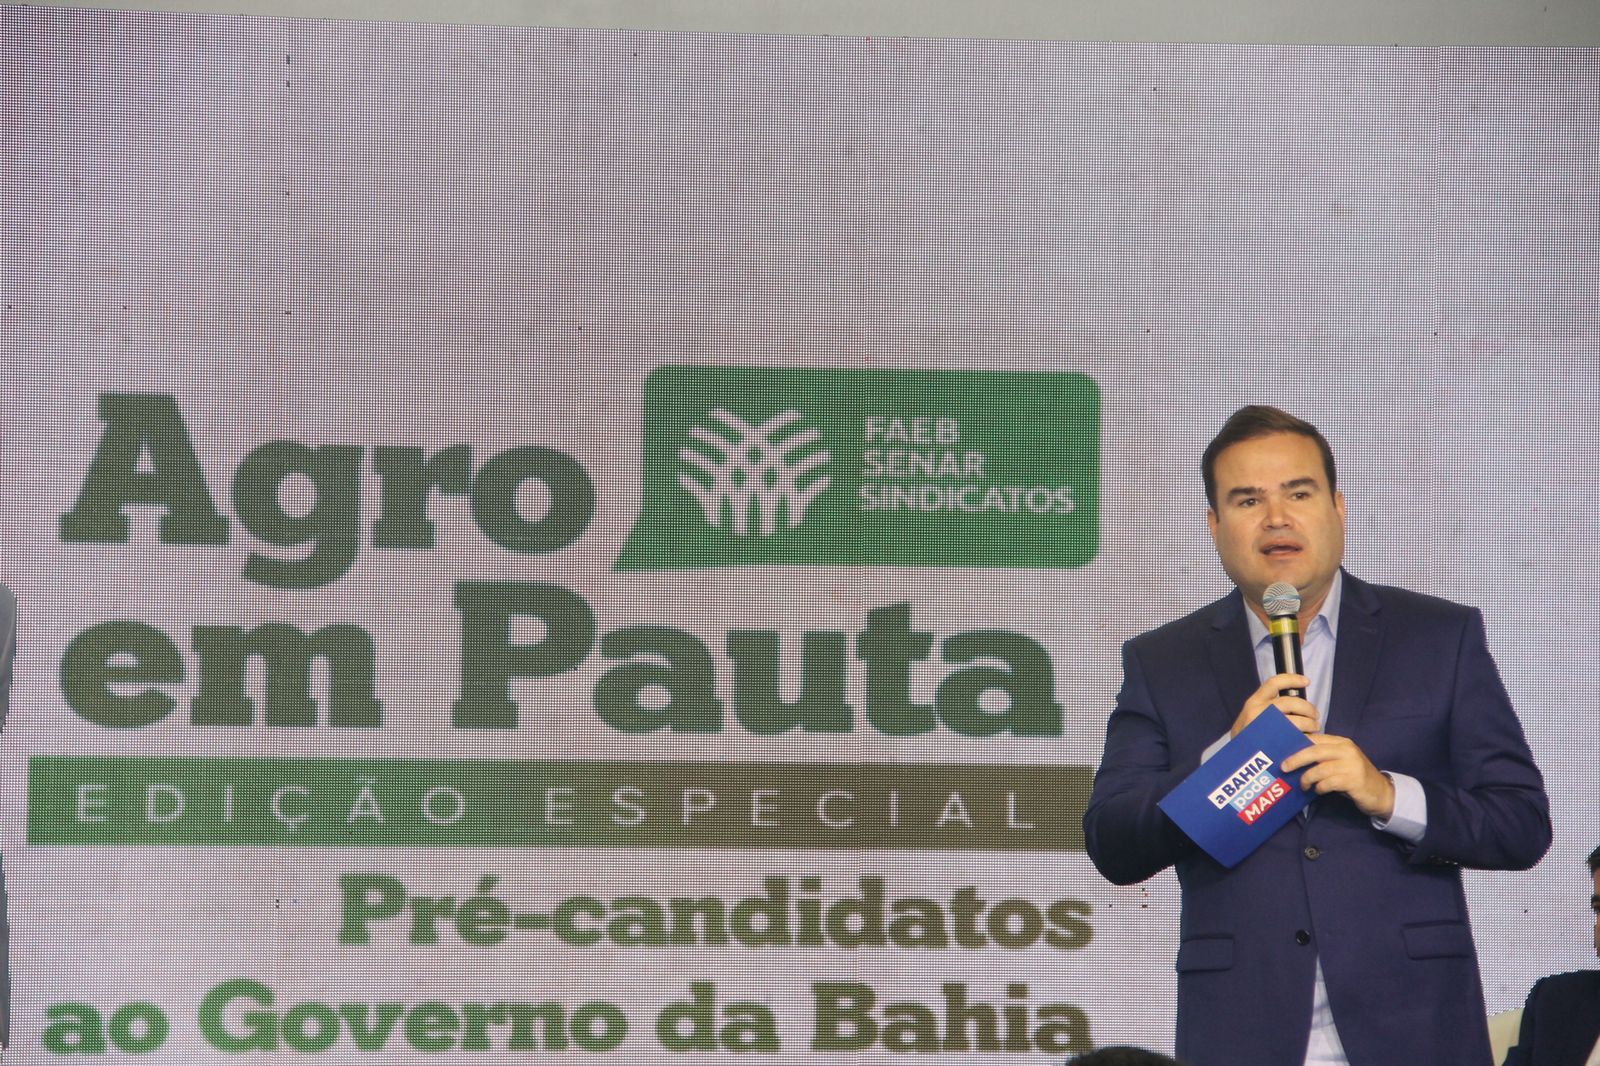 Na Faeb, Cacá Leão defende importância do Parque de Exposições para o setor agro